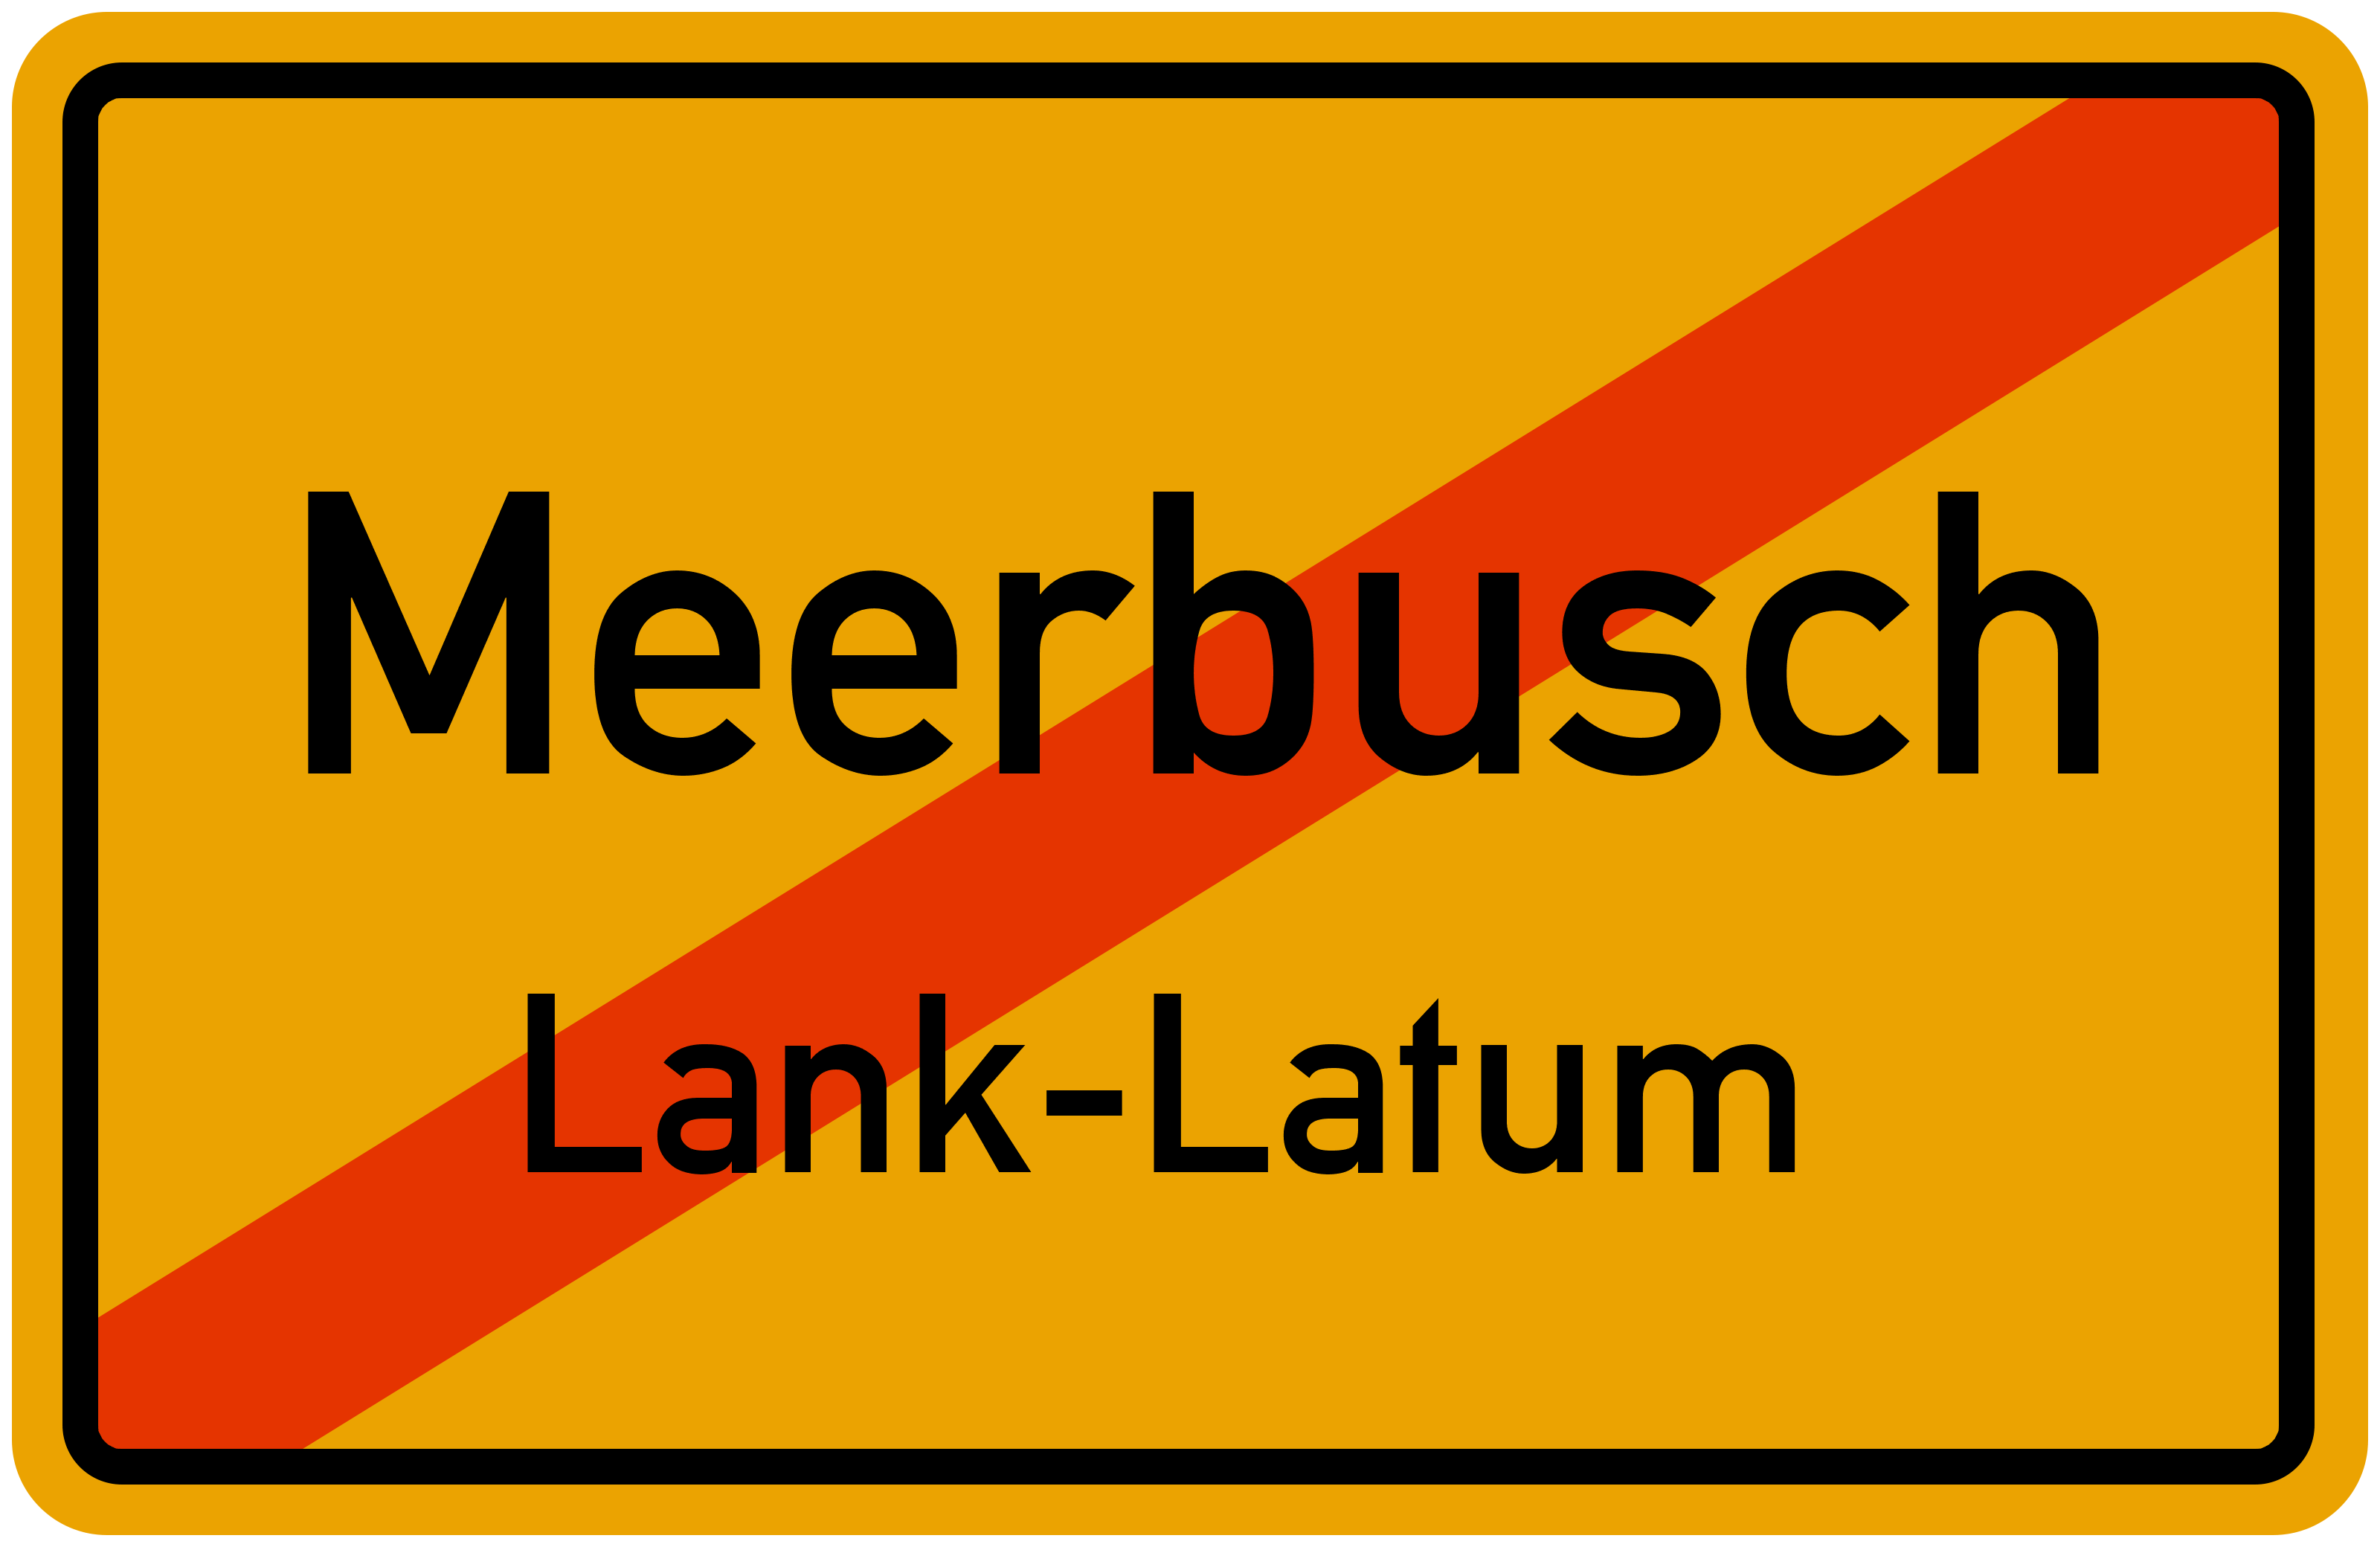 Ortsschild Meerbusch-Lank-Latum kostenlos: Download & Drucken